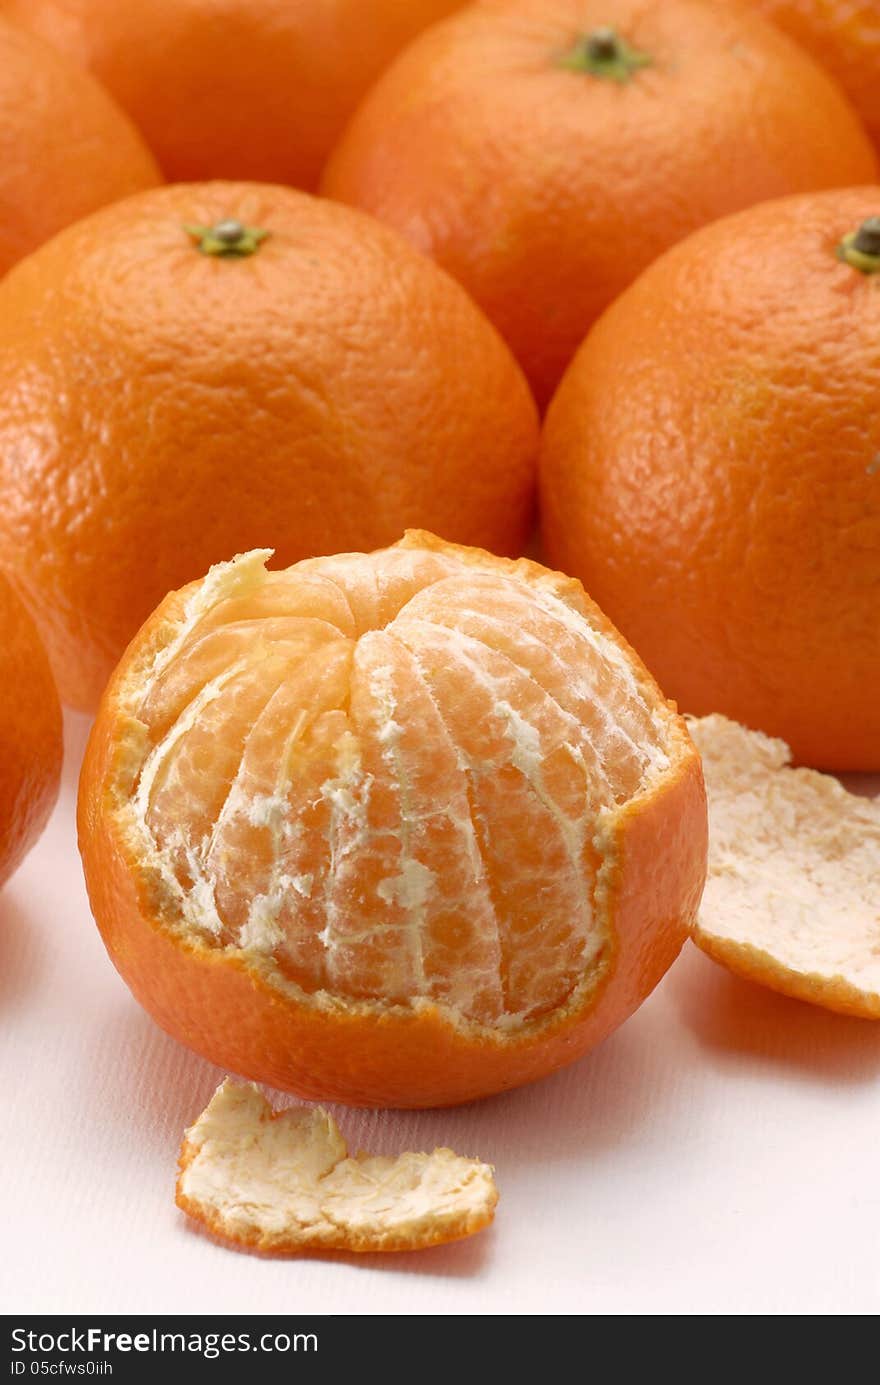 Peeled mandarin on fruits background. Peeled mandarin on fruits background.